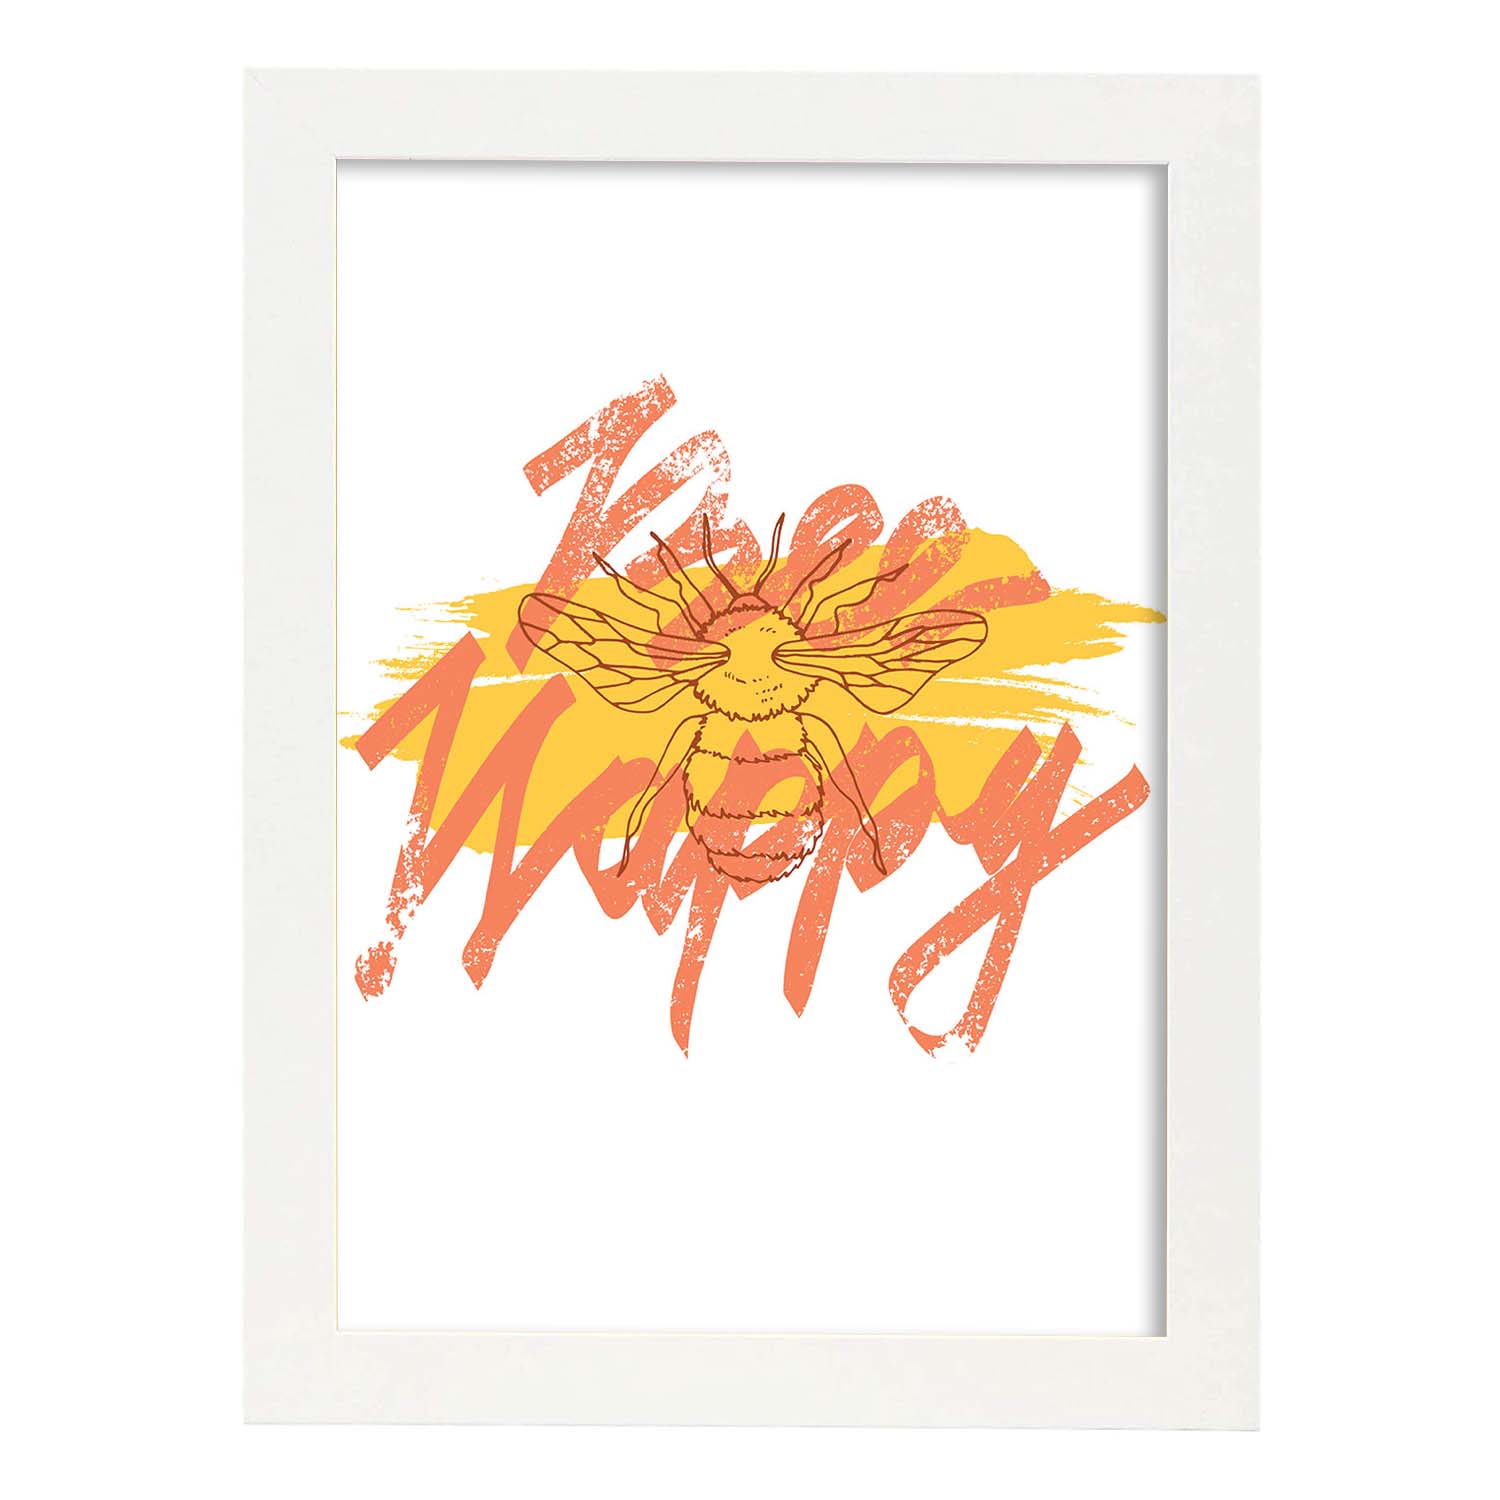 Posters con mensajes felices ilustrados. Lámina de decoración 'Bee Happy' con frases motivadoras y llenas de energia.-Artwork-Nacnic-A4-Marco Blanco-Nacnic Estudio SL